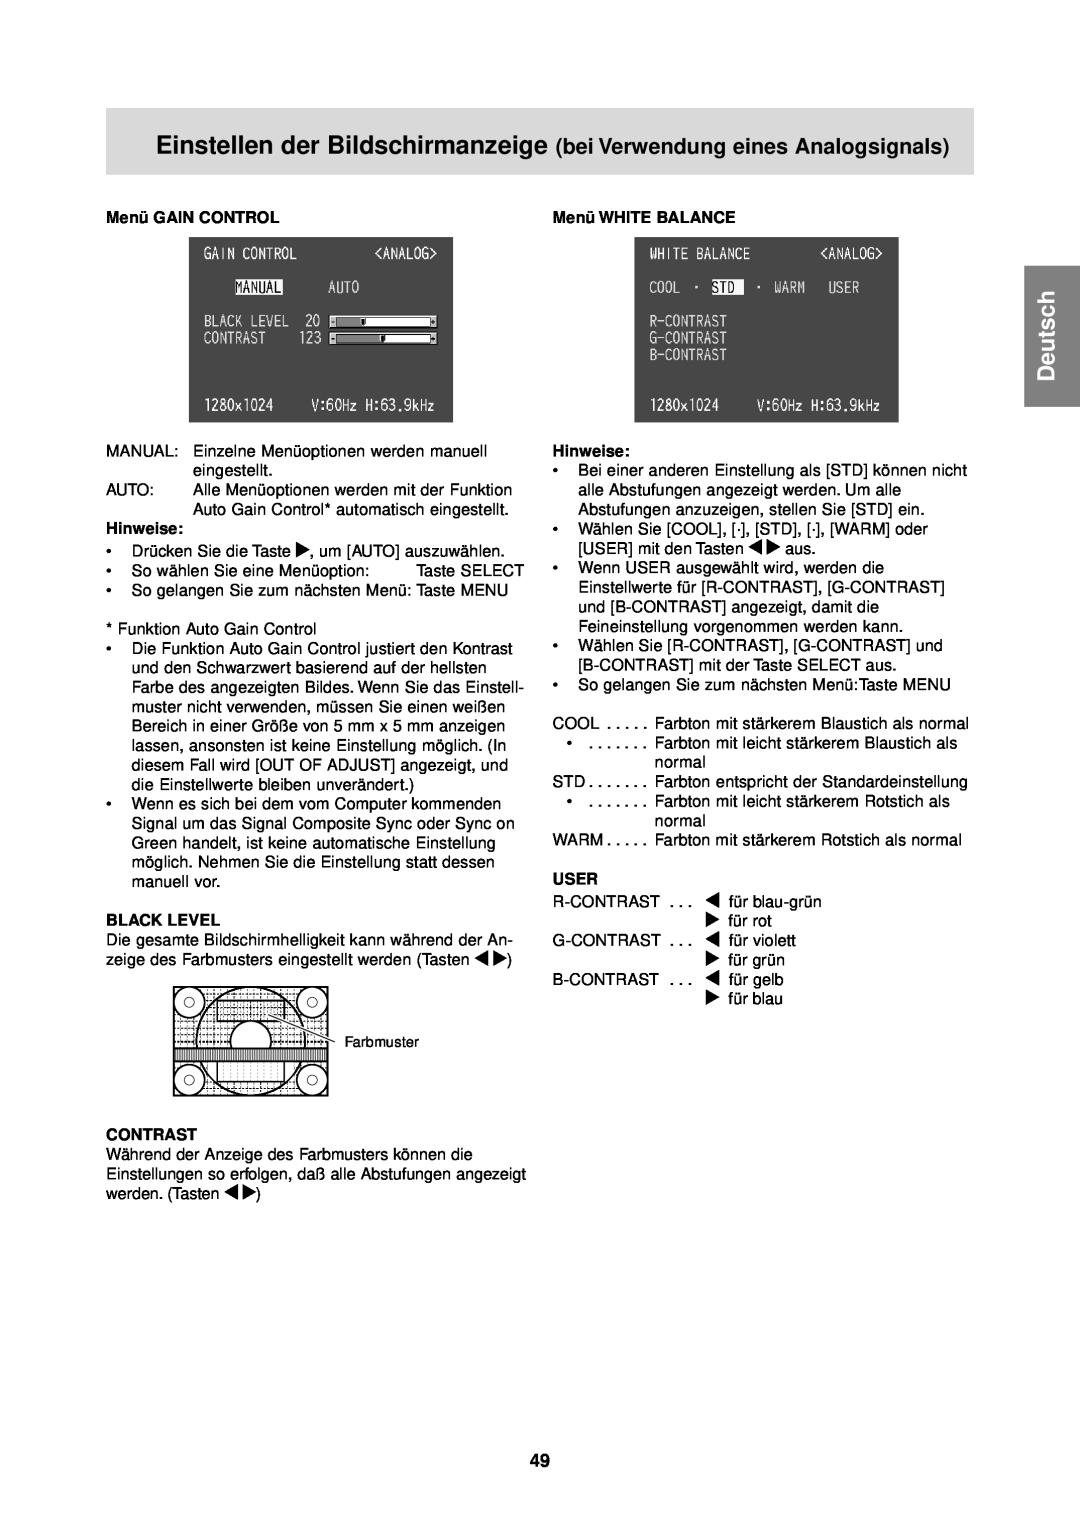 Sharp LL-T1610W Deutsch, Einstellen der Bildschirmanzeige bei Verwendung eines Analogsignals, Menü GAIN CONTROL, Hinweise 